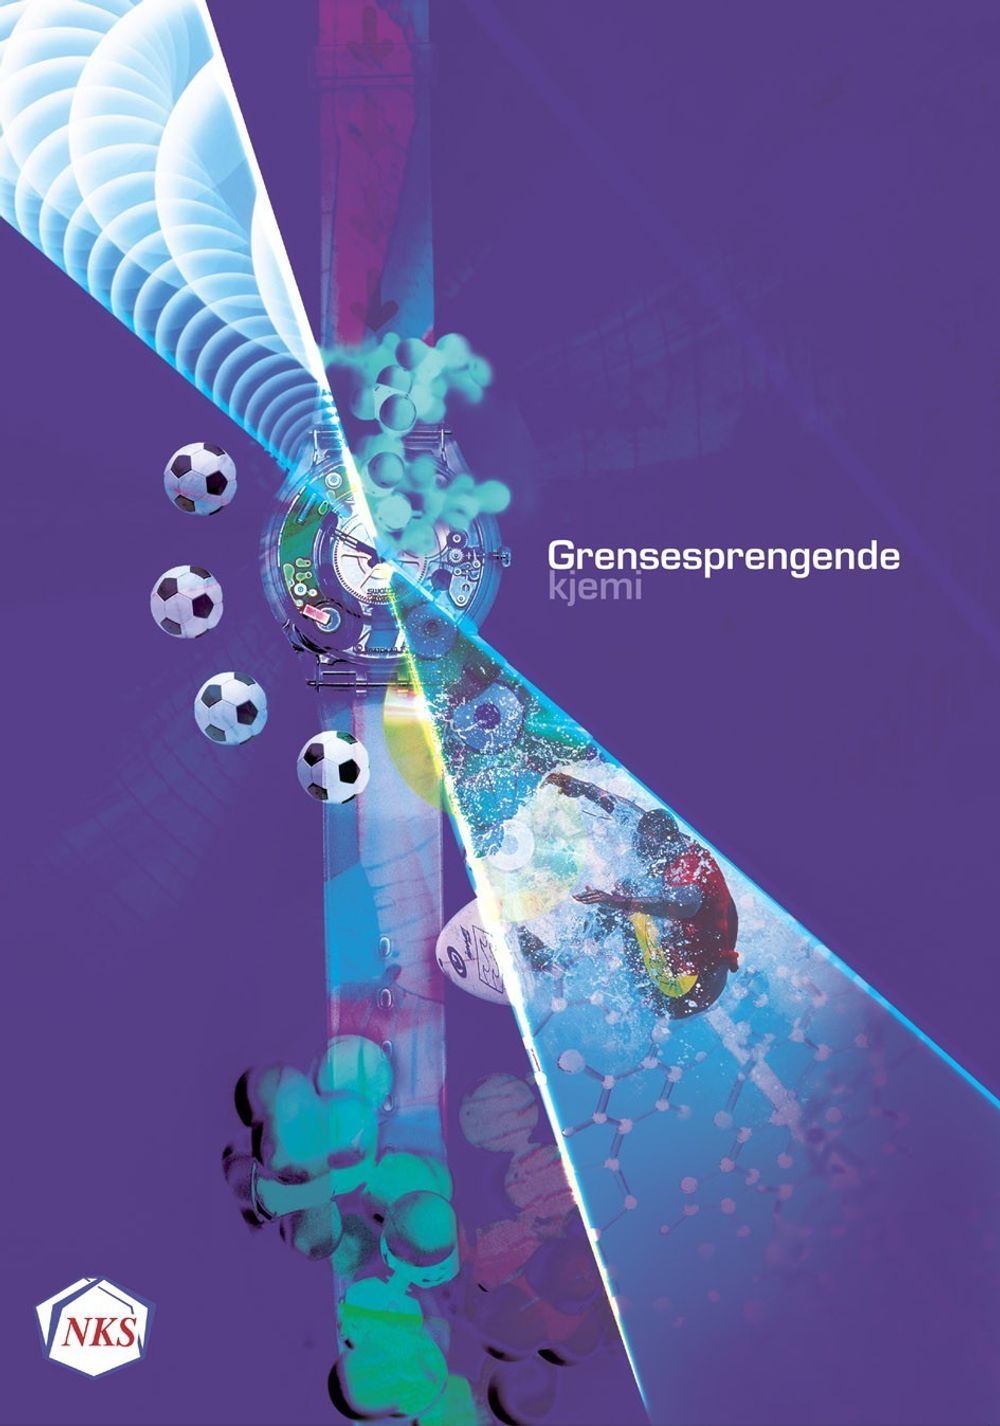 Omslaget til boka "Grensesprengende kjemi", som Norsk Kjemisk Selskap står bak.